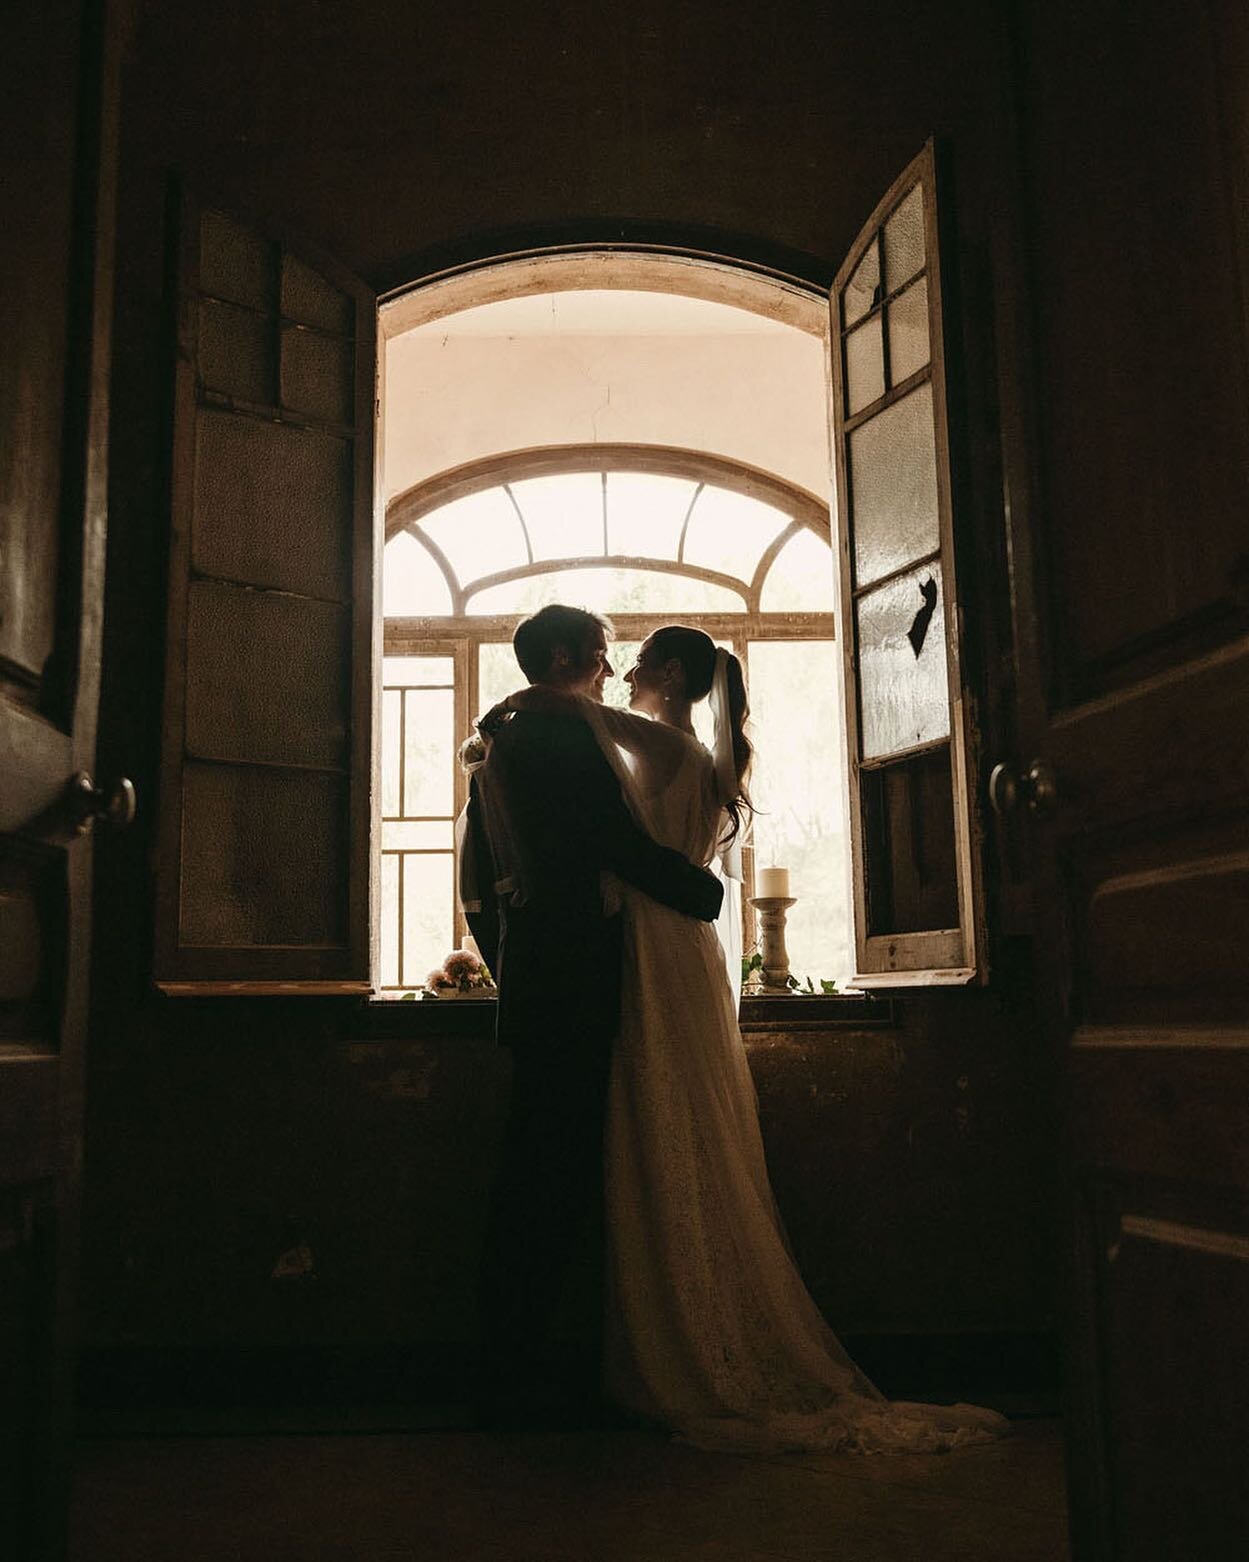 Menuda la que liaron Marta y Joaquim en el Castell de Ben Viure. Una boda para recordar... 
⠀⠀⠀⠀⠀⠀⠀⠀⠀
⠀⠀⠀⠀⠀⠀⠀⠀⠀
⠀⠀⠀⠀⠀⠀⠀⠀⠀
⠀⠀⠀⠀⠀⠀⠀⠀⠀
⠀⠀⠀⠀⠀⠀⠀⠀⠀
#castelldebenviure
#wedding 
#weddingphotographer 
#love 
#boda
#inspiration 
#weddingphotographyinspiration